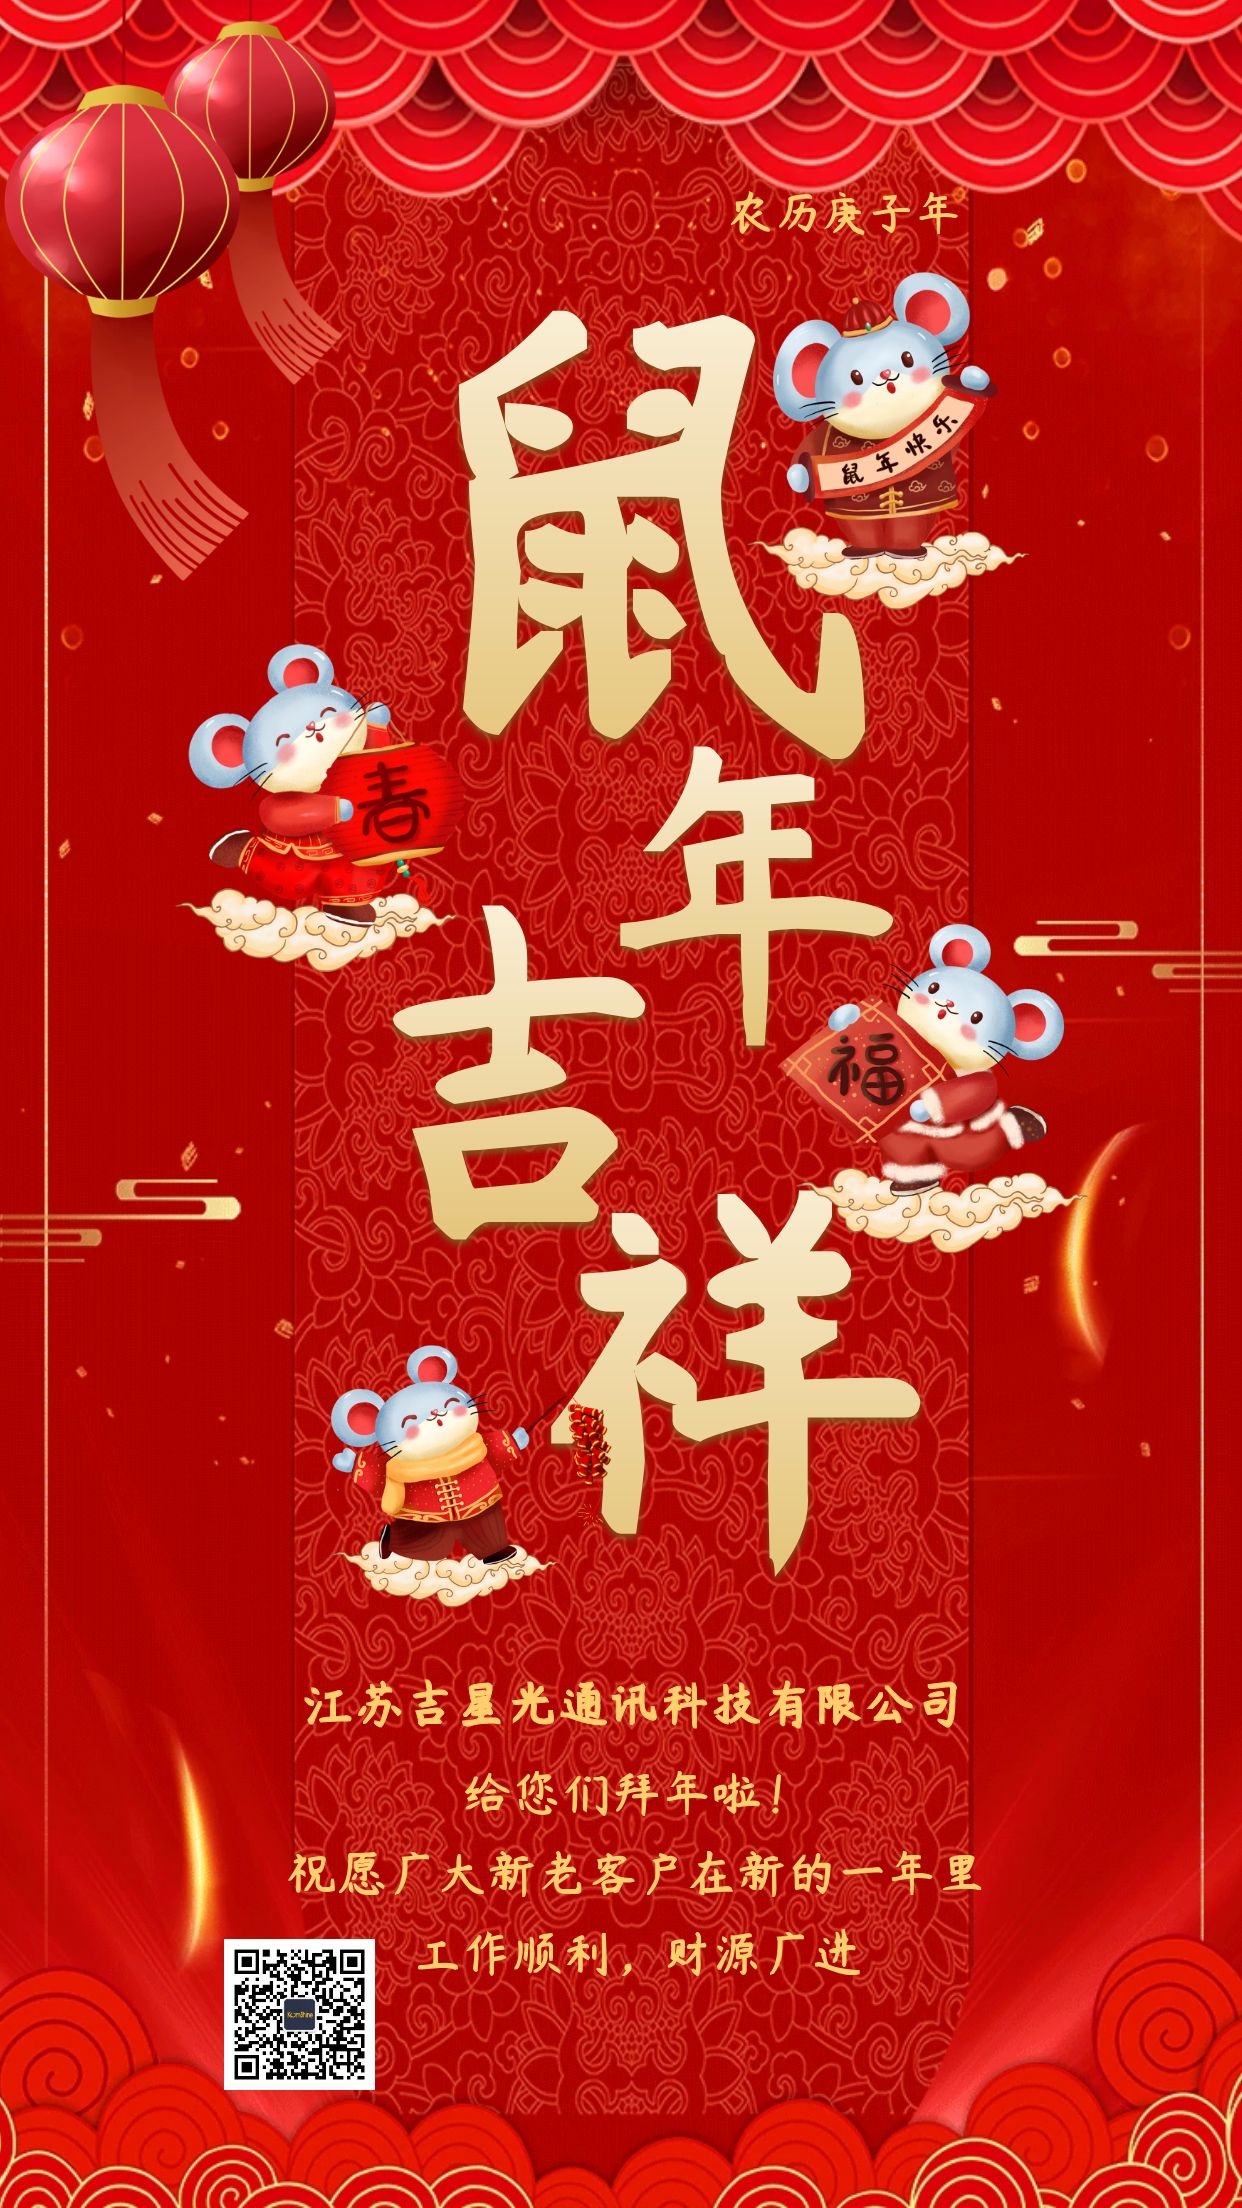 江苏吉星恭祝您新年快乐